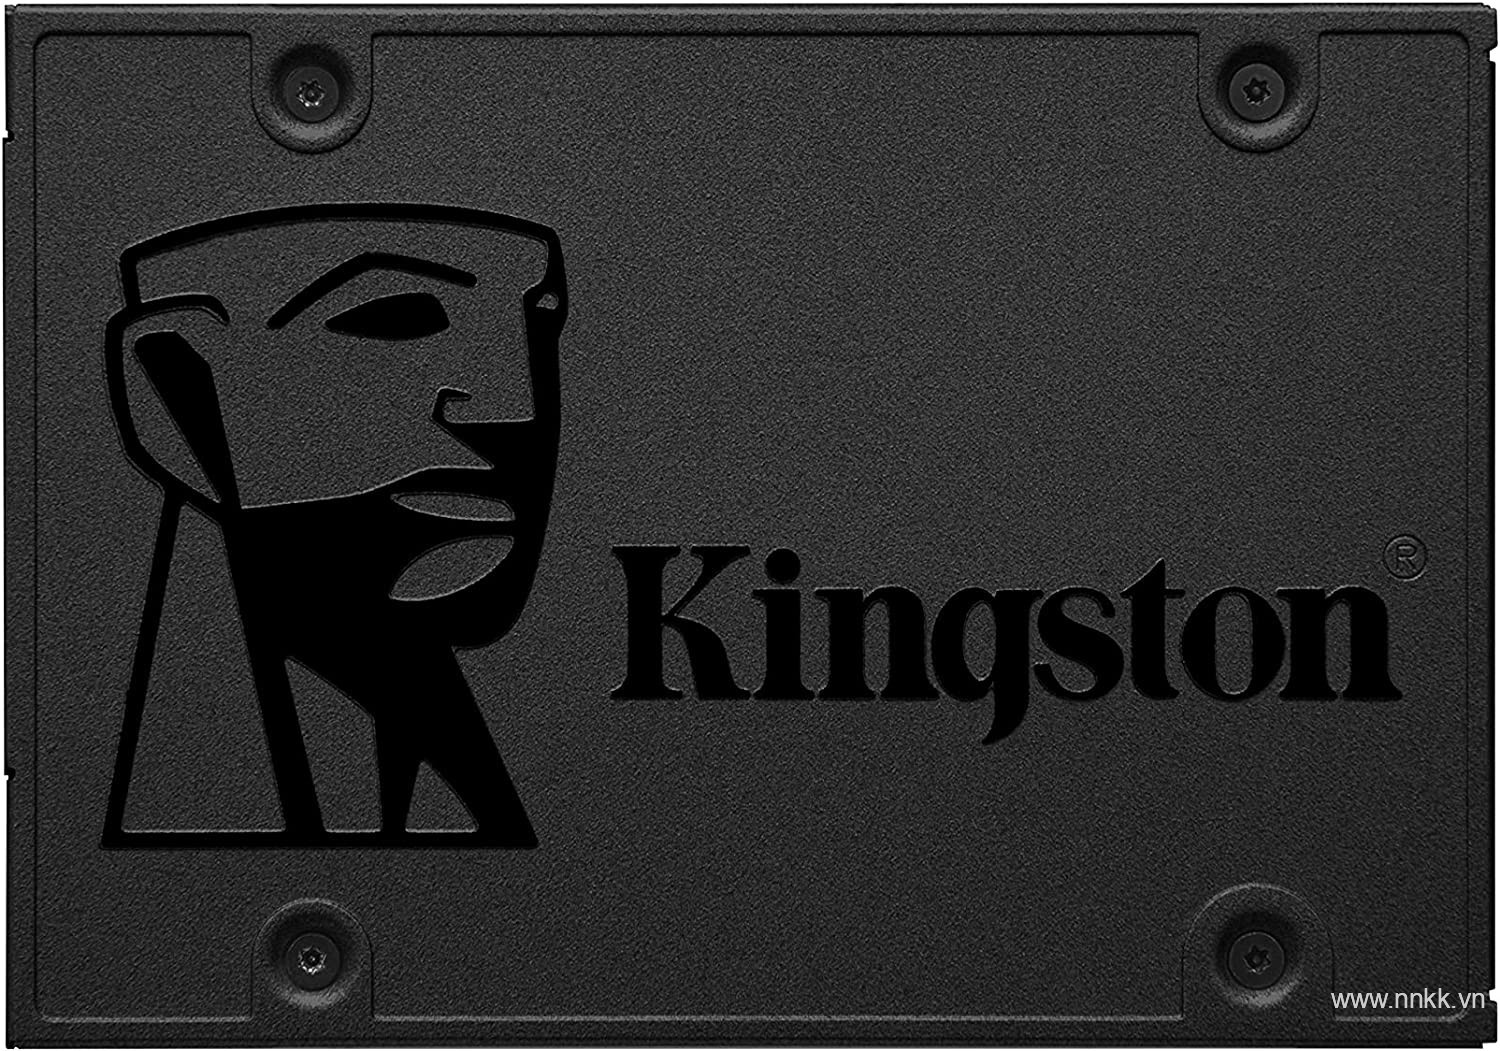 Ổ cứng SSD Kingston A400 240GB 2.5 inch SATA3 (Đọc 500MB/s - Ghi 450MB/s)